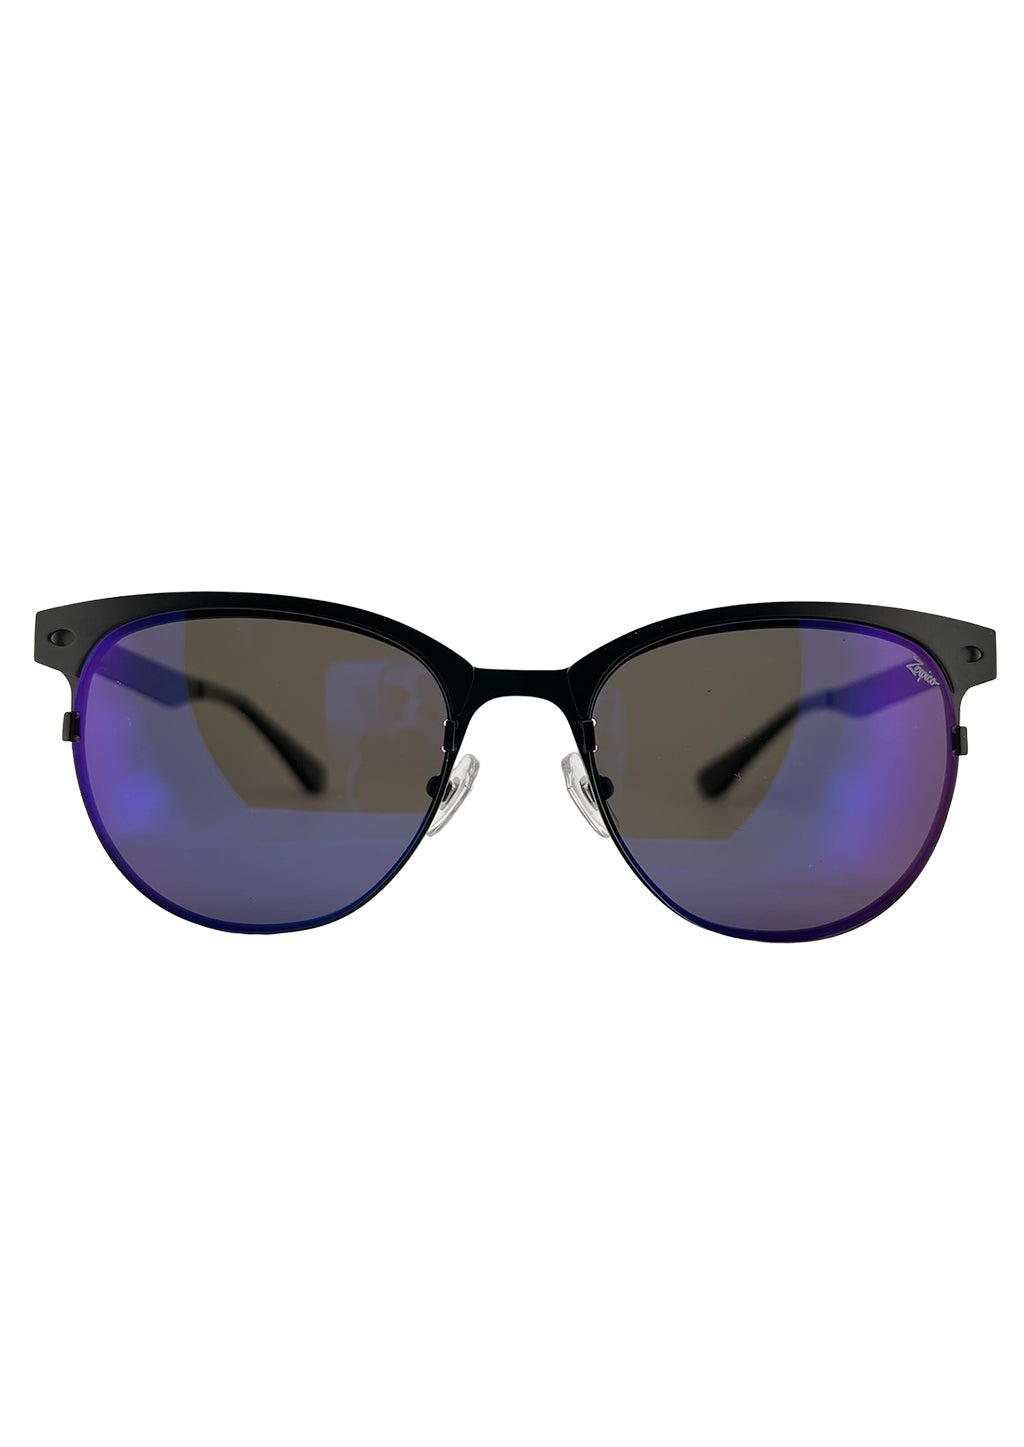 Unisex Sonnenbrille - Titanium Clubmasters - V2 - Changeable Lenses-1